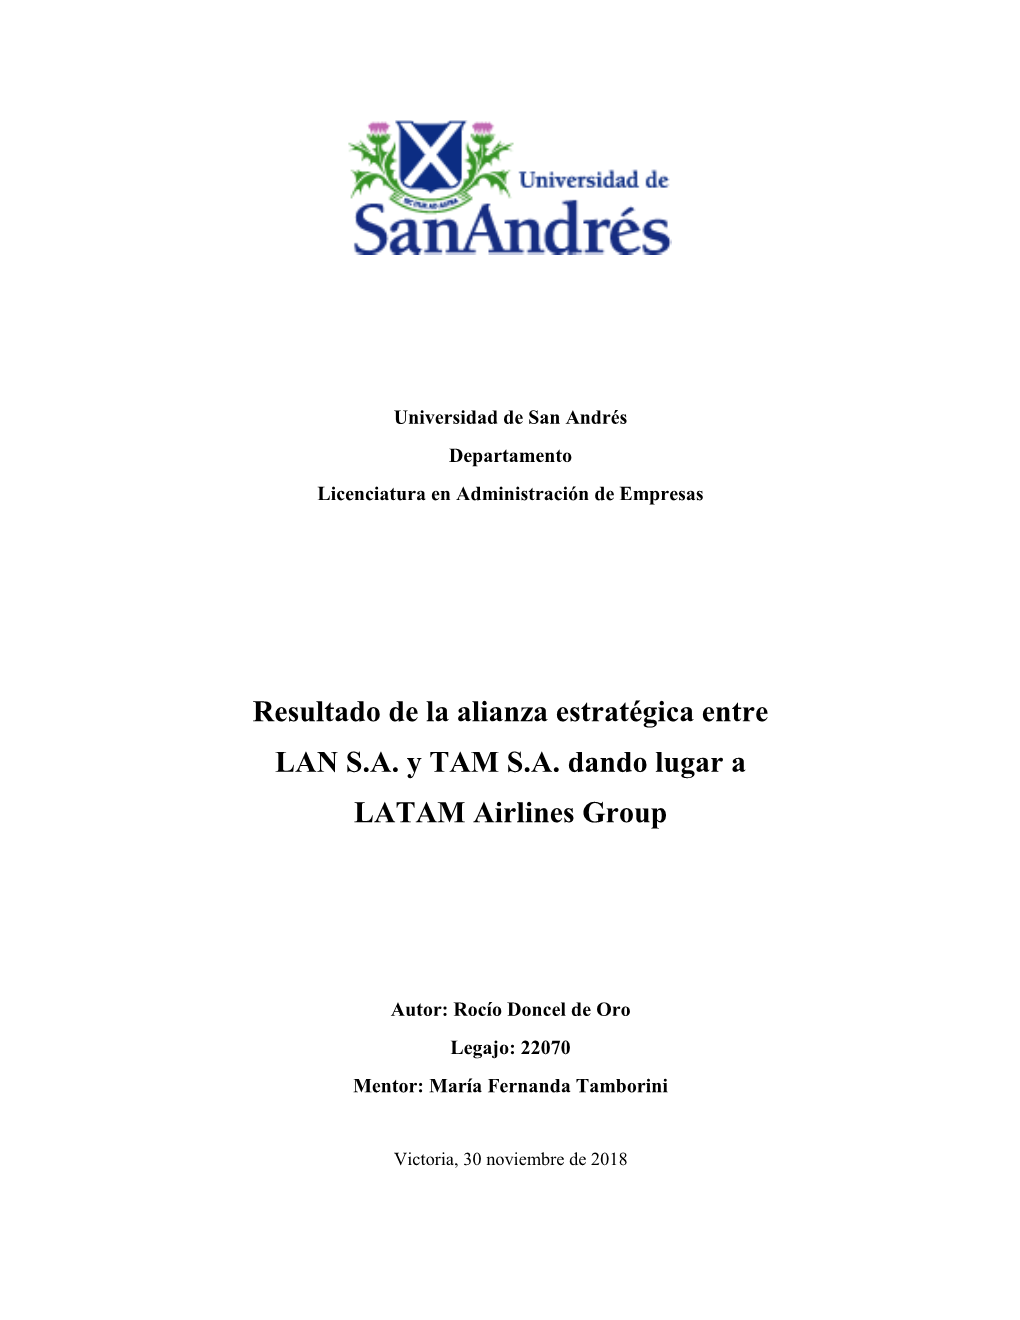 Resultado De La Alianza Estratégica Entre LAN S.A. Y TAM S.A. Dando Lugar a LATAM Airlines Group